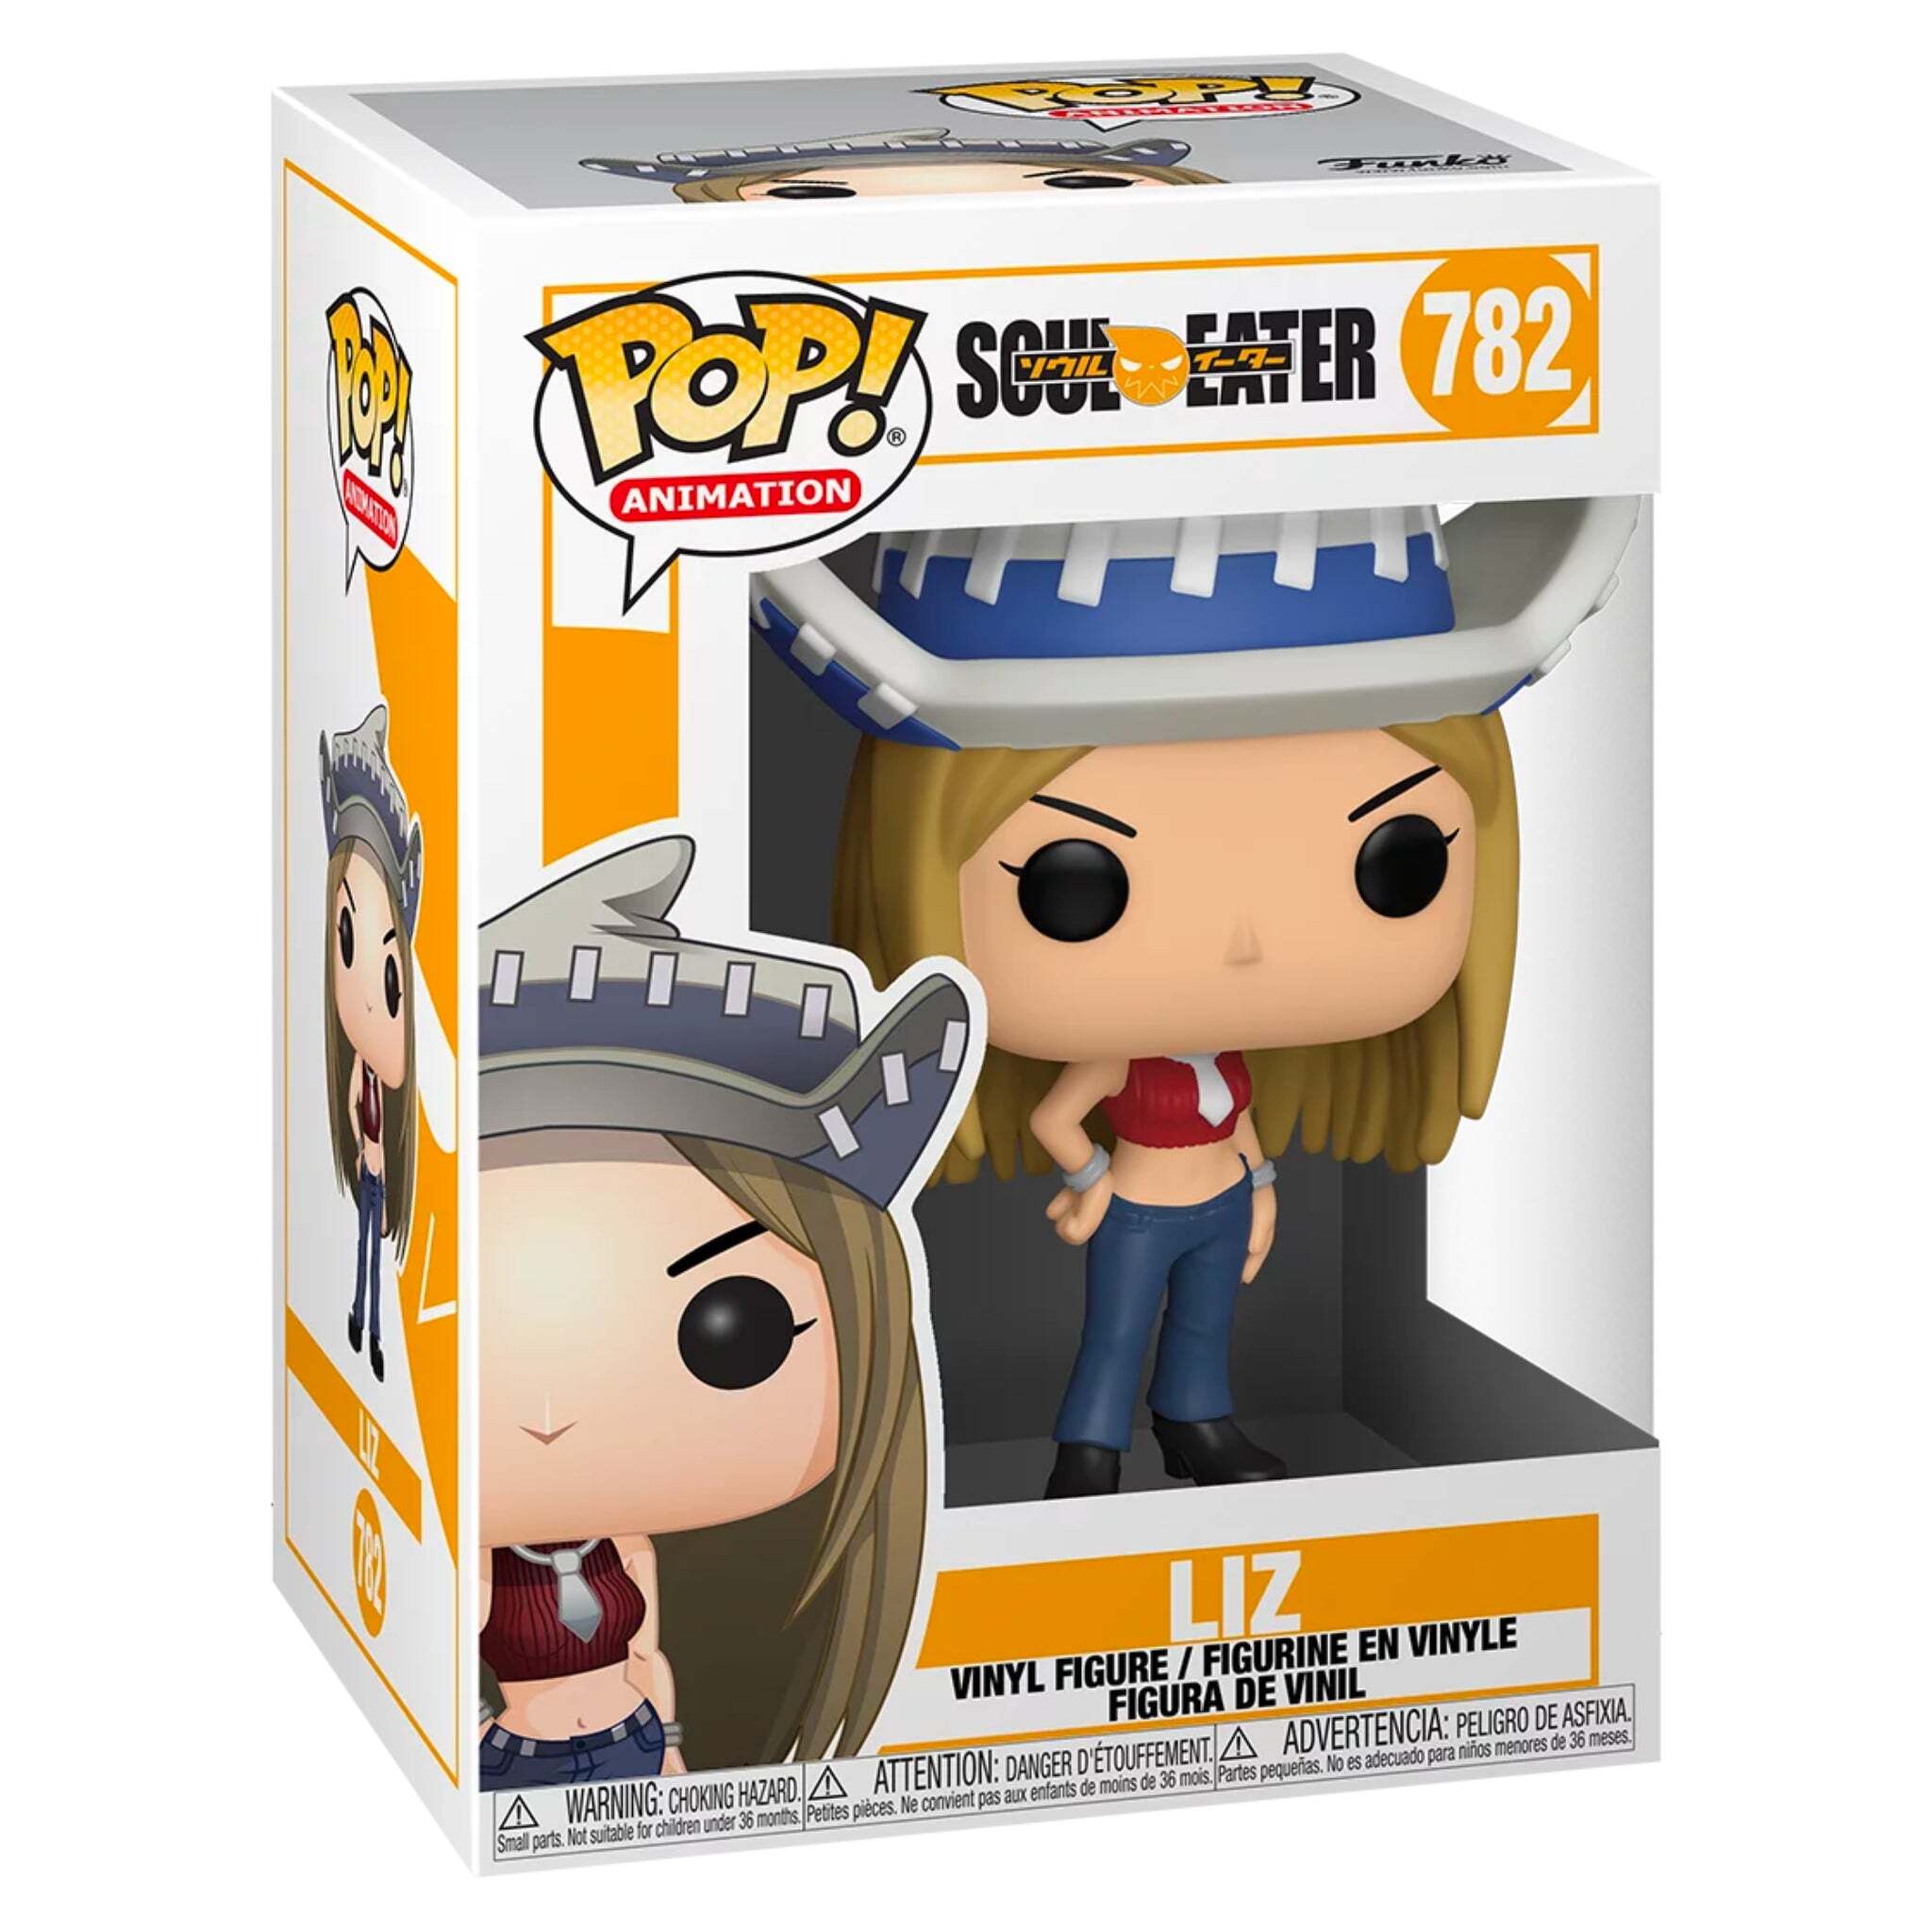 Liz (Soul Eater) Funko Pop!